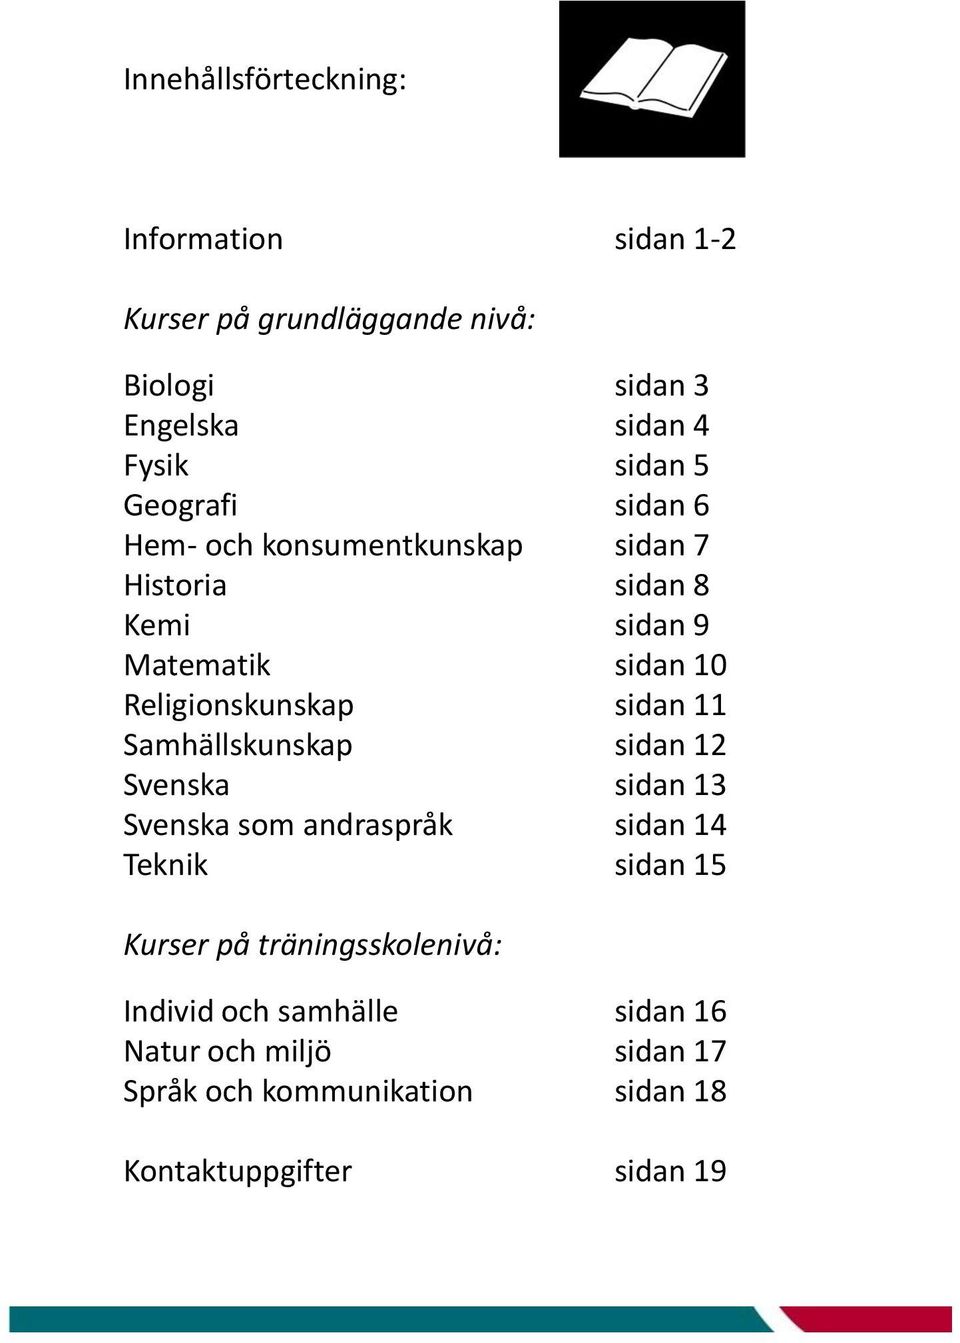 sidan 11 Samhällskunskap sidan 12 Svenska sidan 13 Svenska som andraspråk sidan 14 Teknik sidan 15 Kurser på